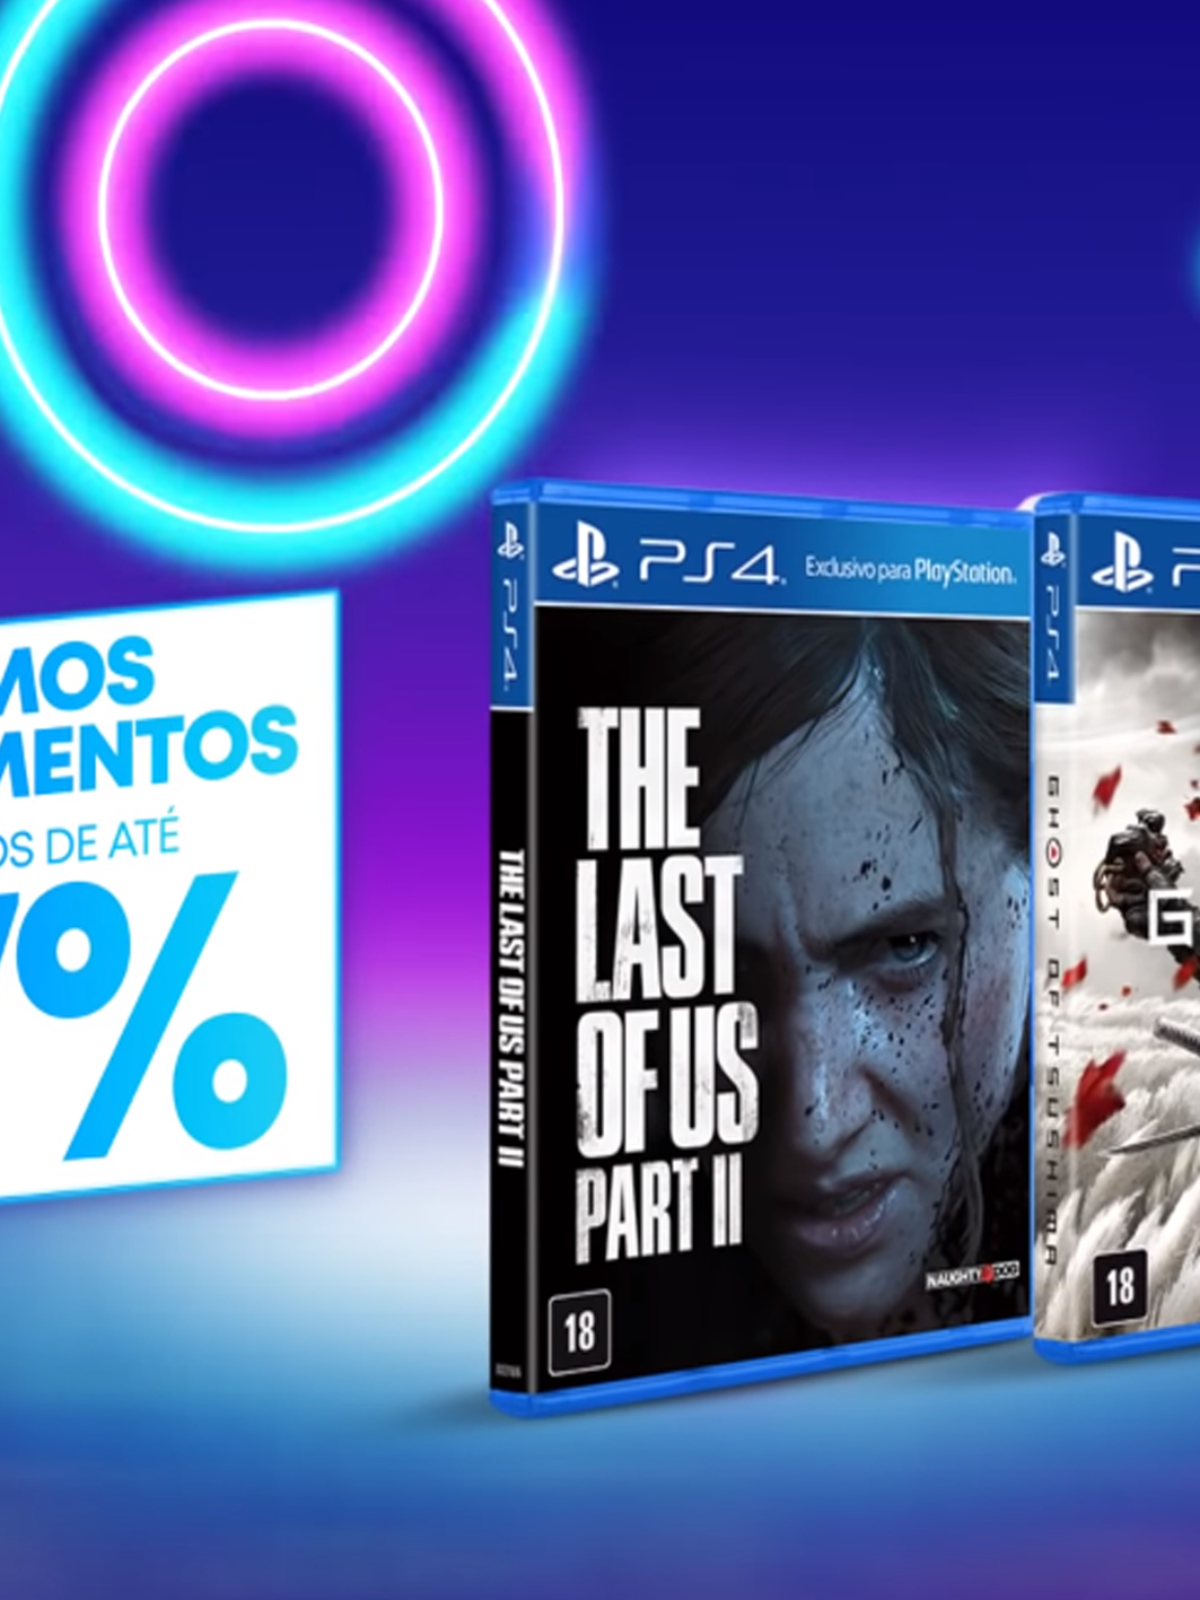 Black Friday! Jogo The Last of Us Part I PS5 Mídia Física